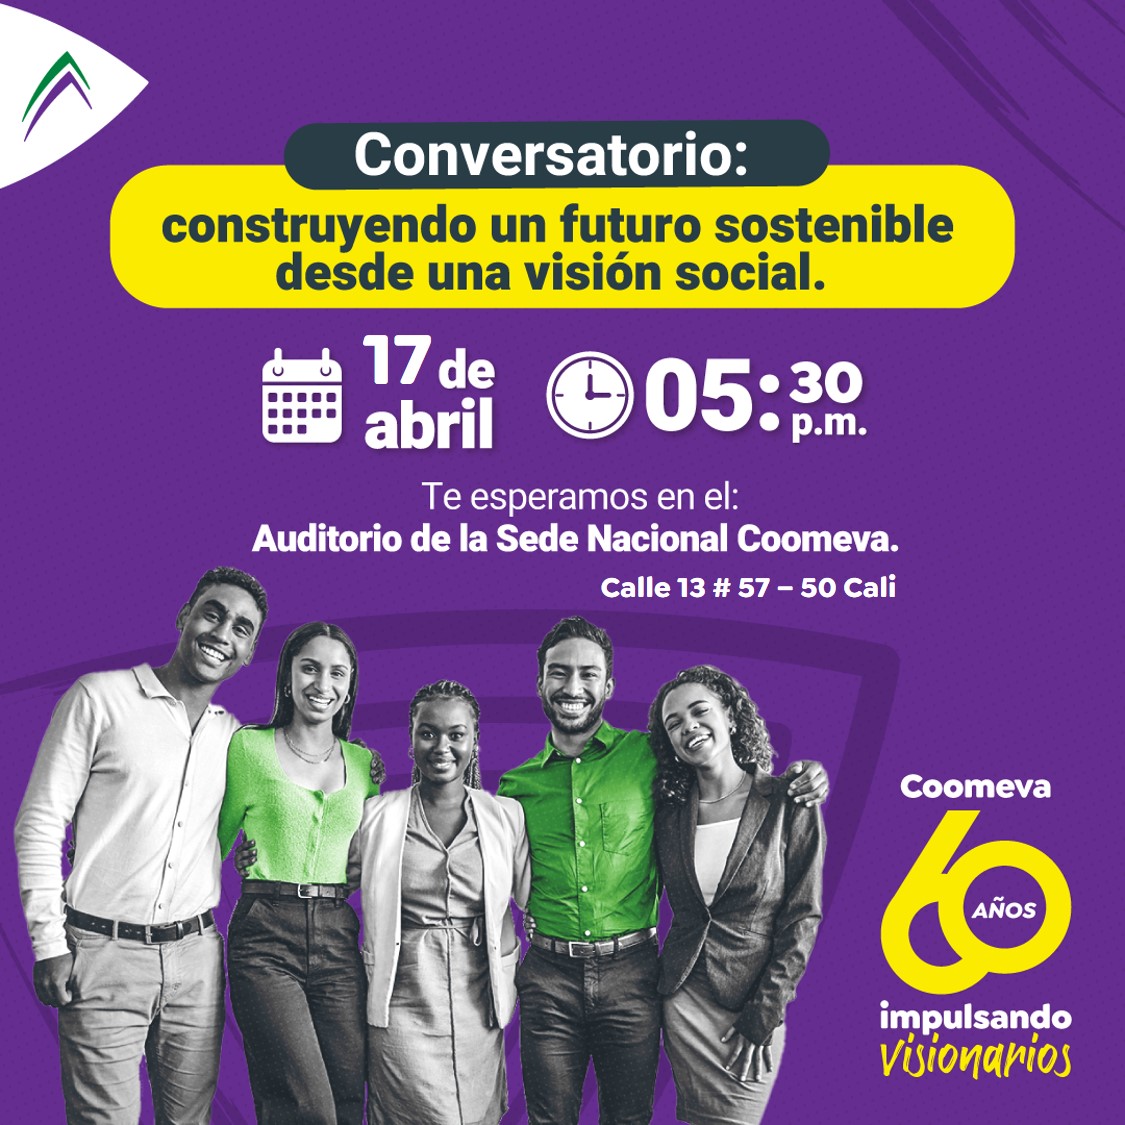 ✅RECOMENDADO | Conversatorio @Grupo_Coomeva: Construyendo un futuro sostenible desde una visión social y ambiental 🌱🌍 Únete a este panel presencial el 17 de abril a las 5:30 pm. #EquidadDeGénero #JusticiaSocial #ConservaciónAmbiental #ResponsabilidadCorporativa